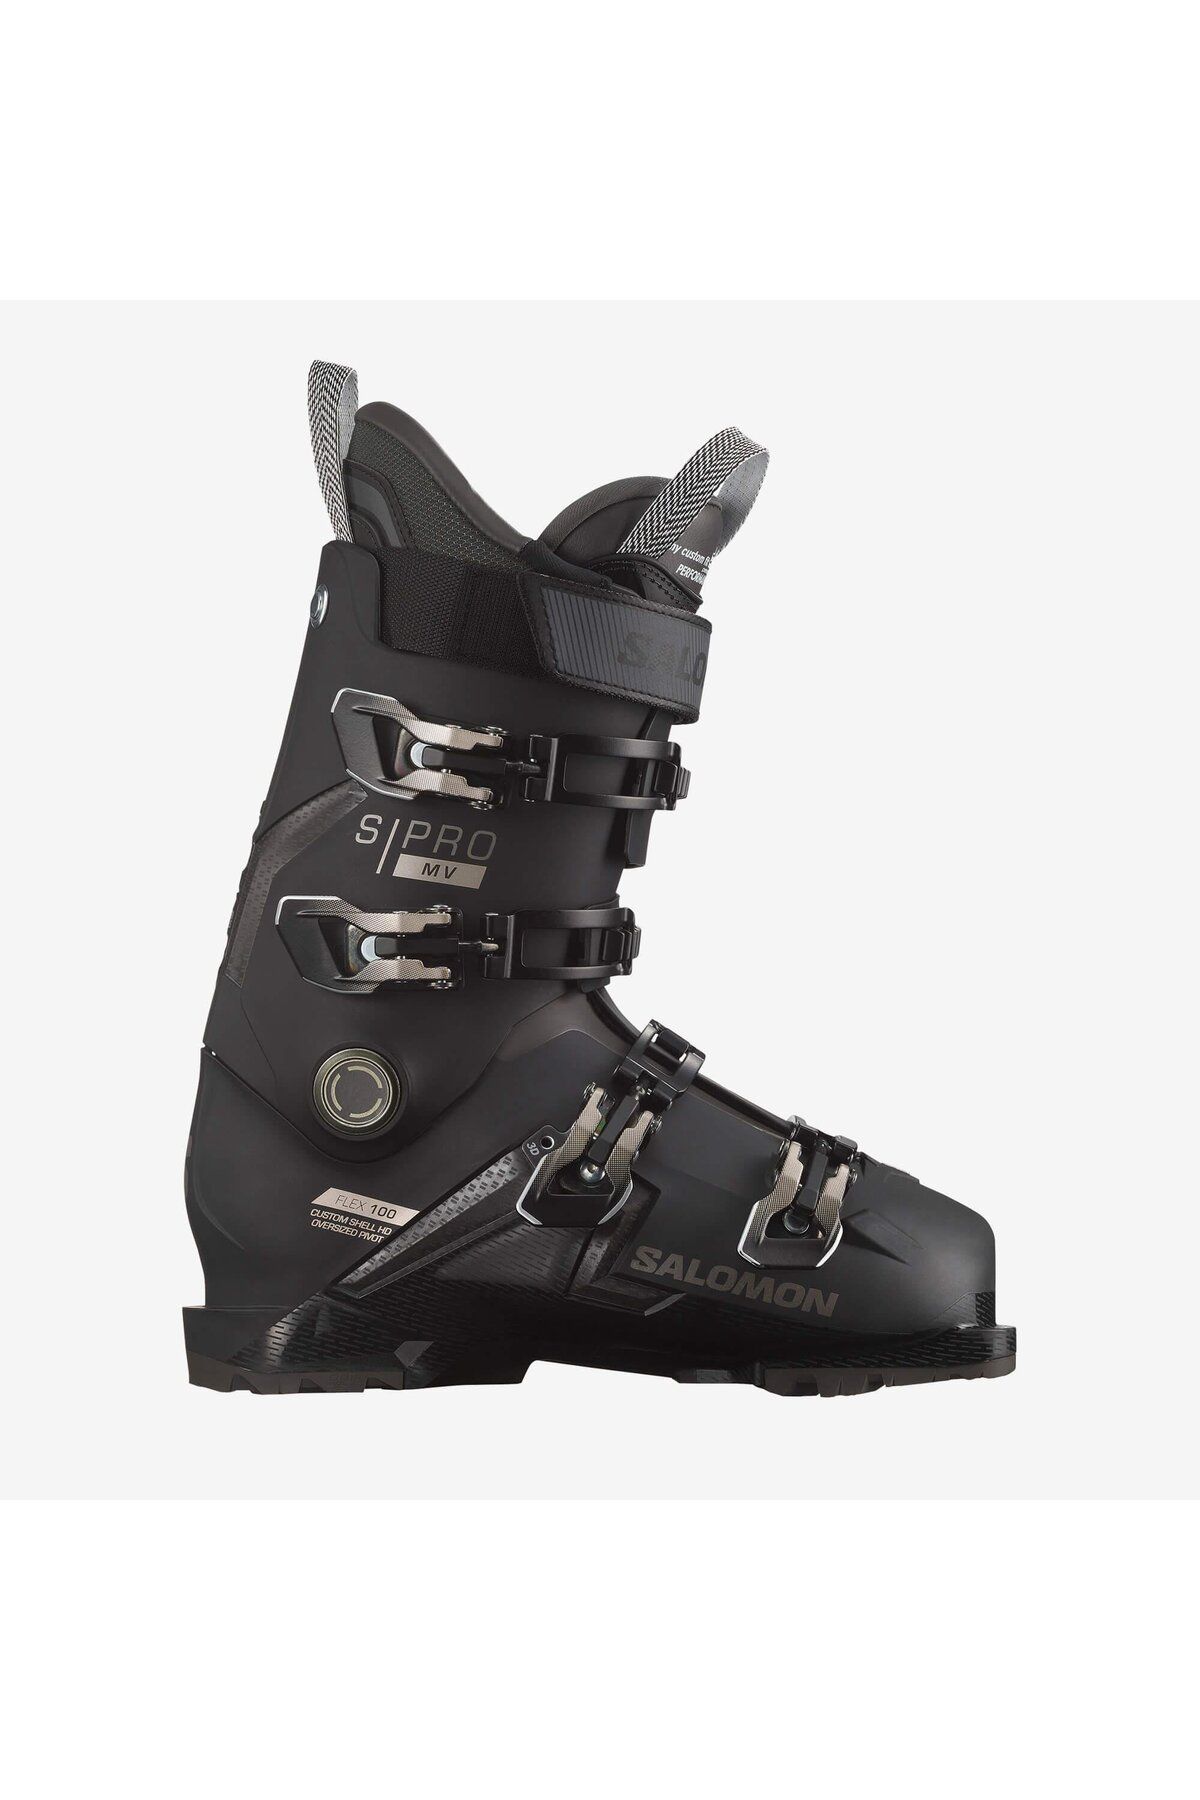 Salomon S/pro Mv 100 Erkek Kayak Ayakkabısı-l4735130002